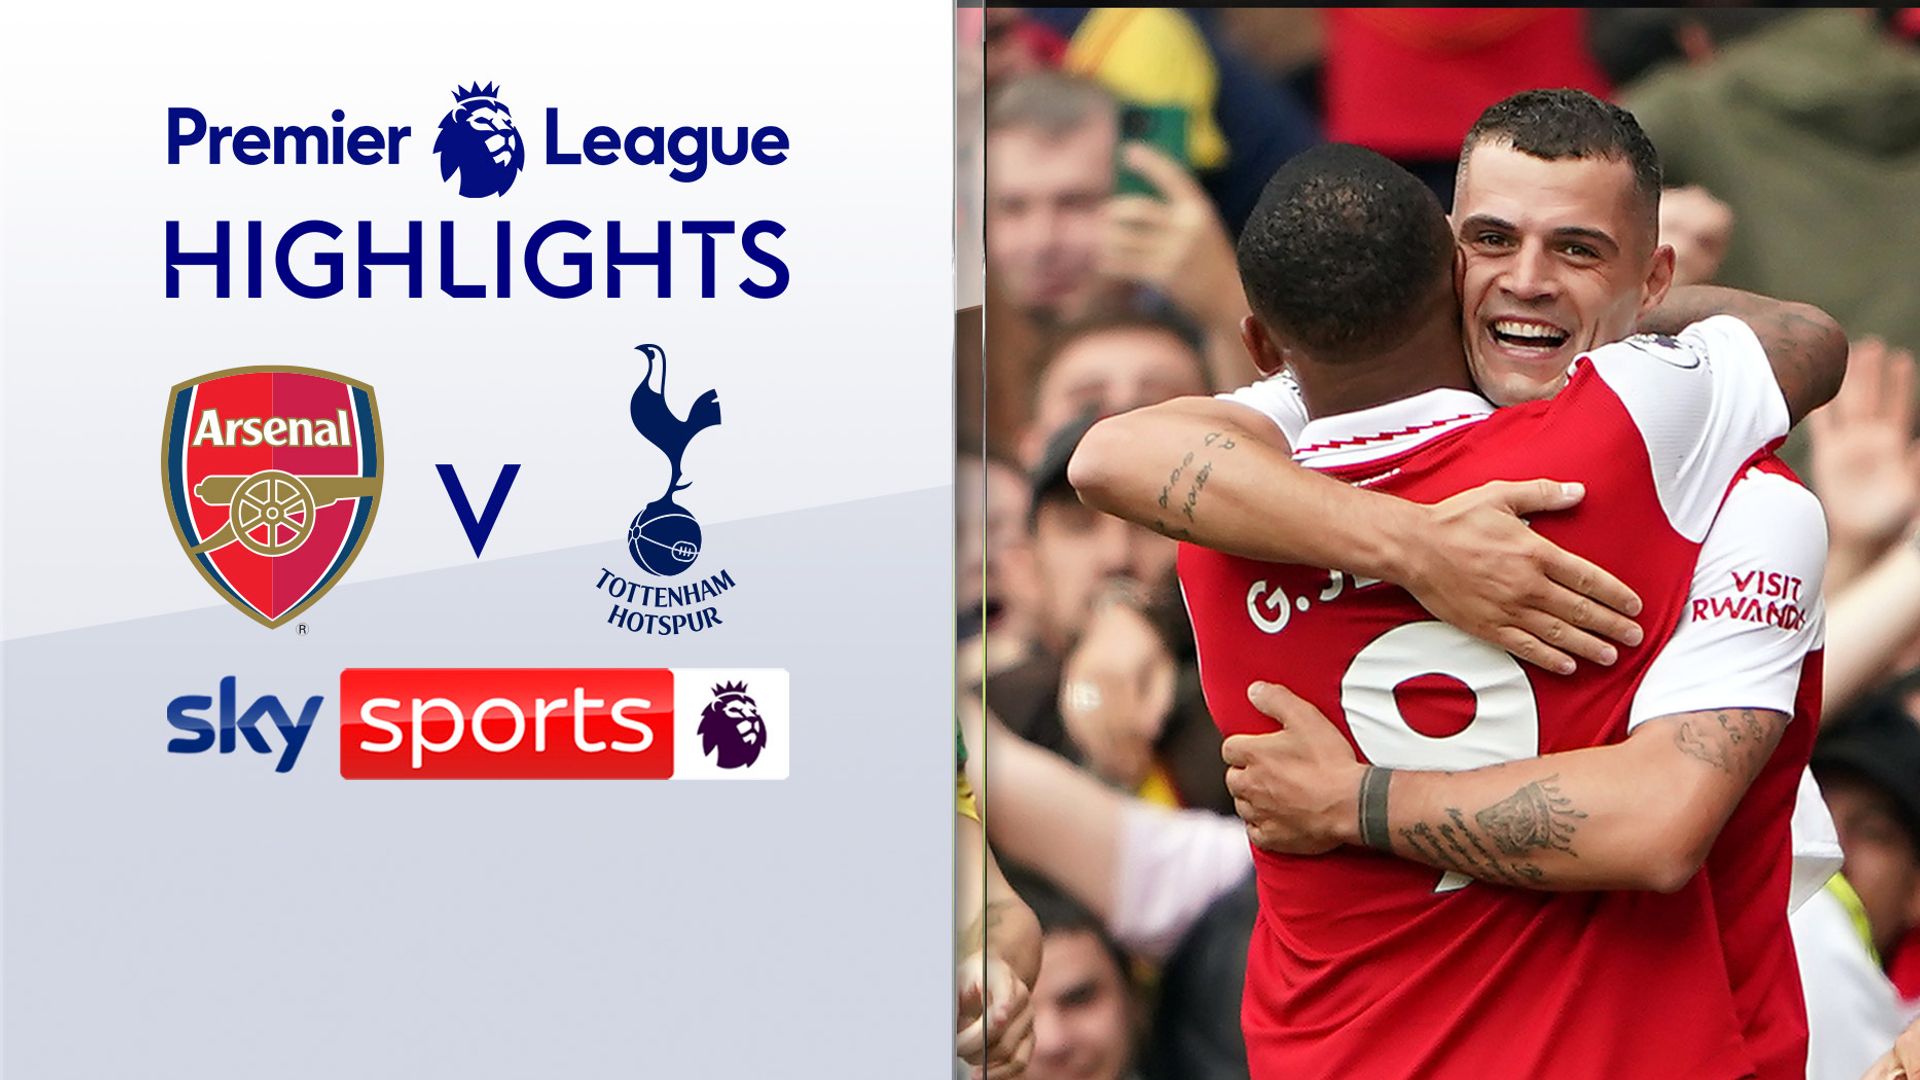 Arsenal sink 10-man Spurs in thrilling derby